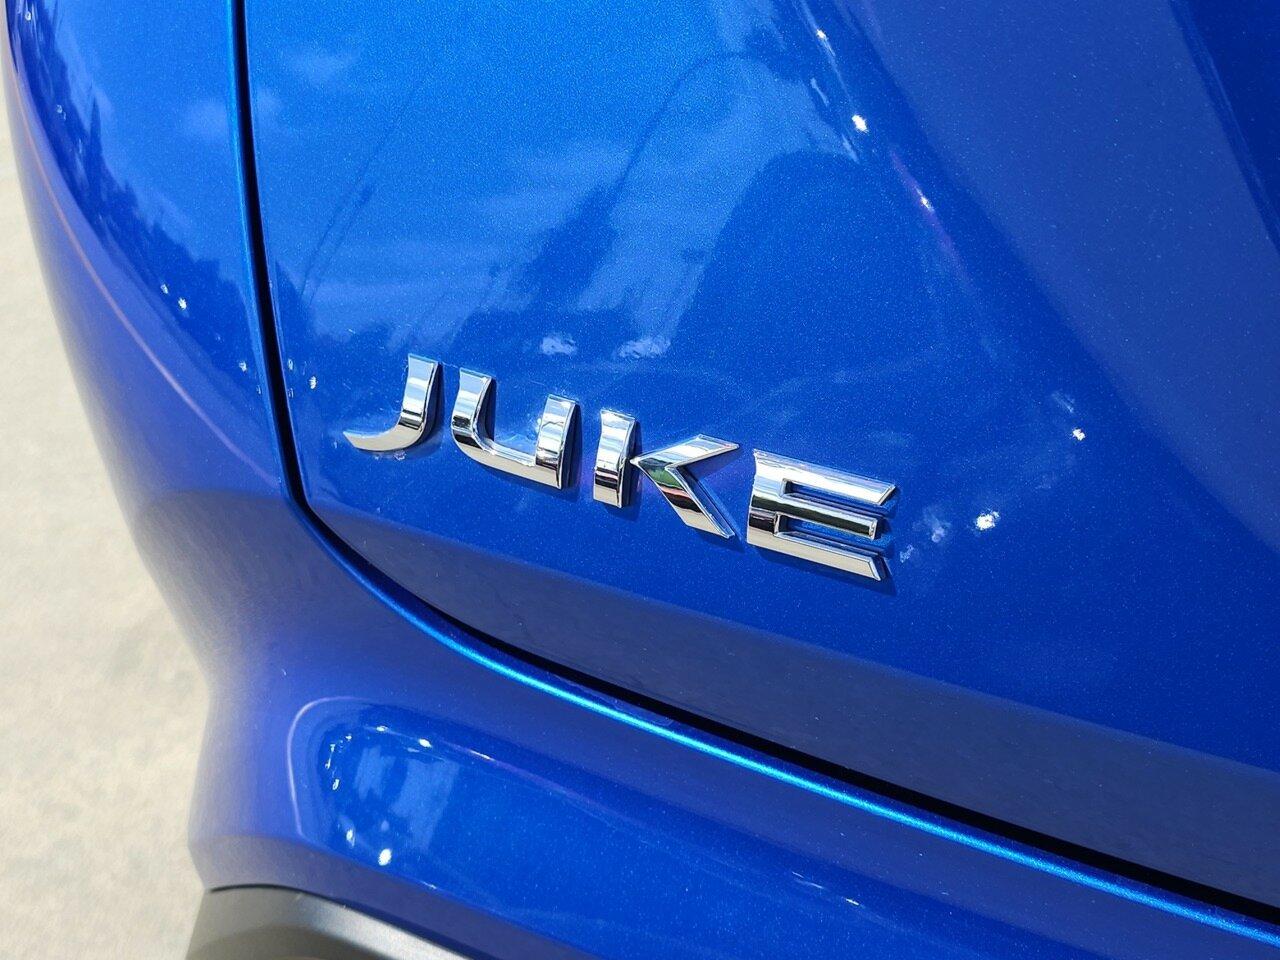 Nissan Juke image 3